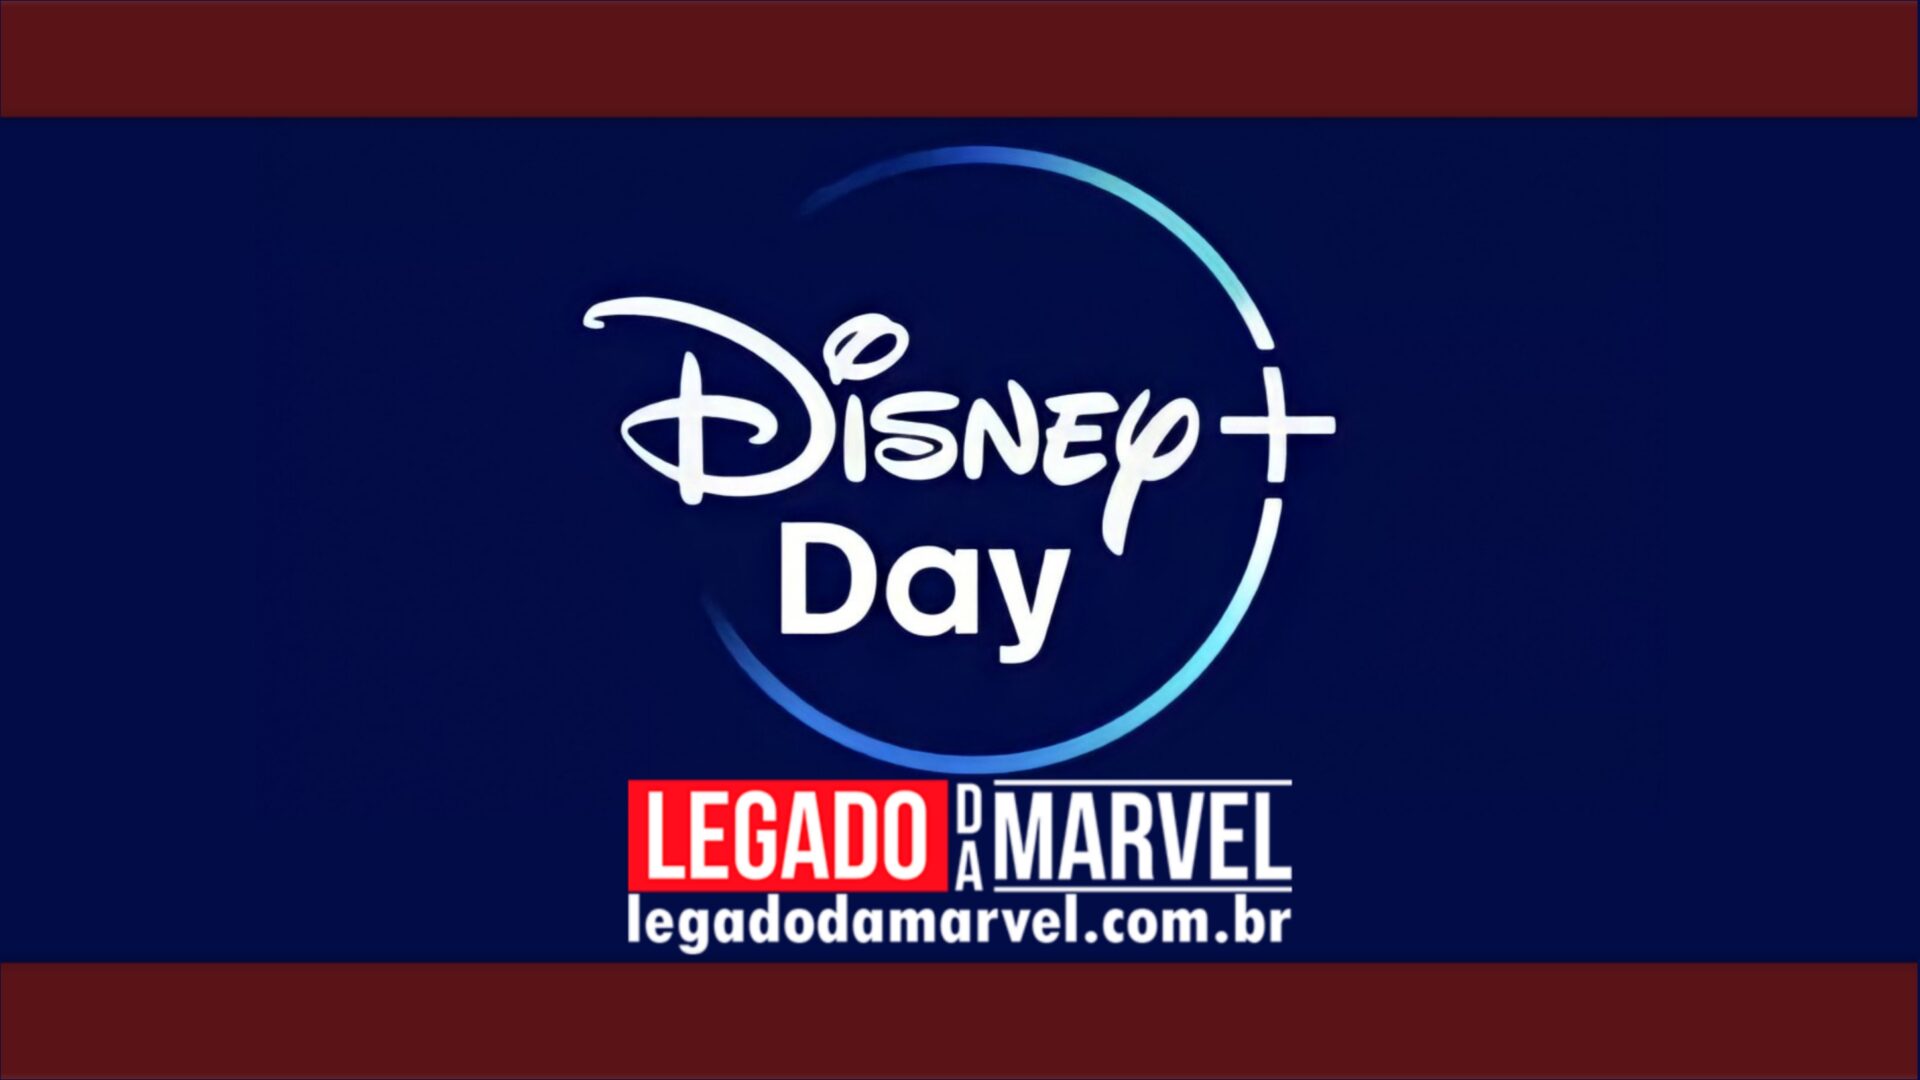  Disney+ Day – Confira as novidades do evento que acontece mês que vem